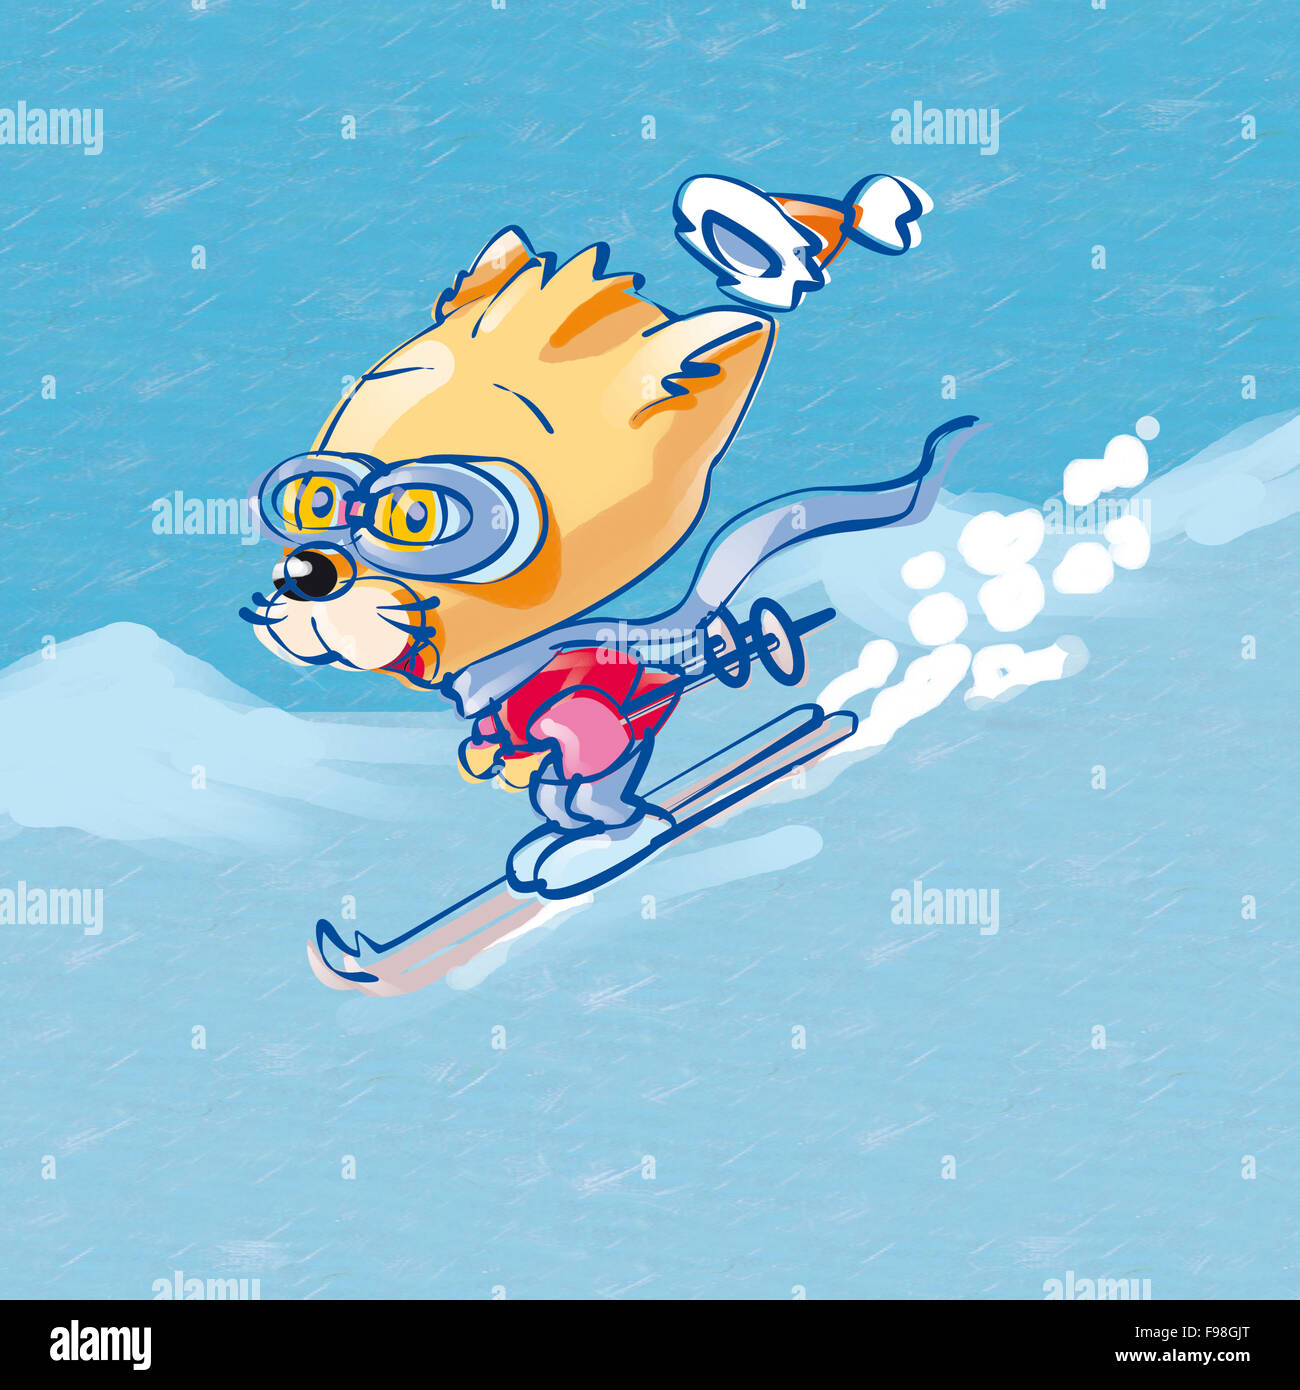 chat de ski Banque D'Images